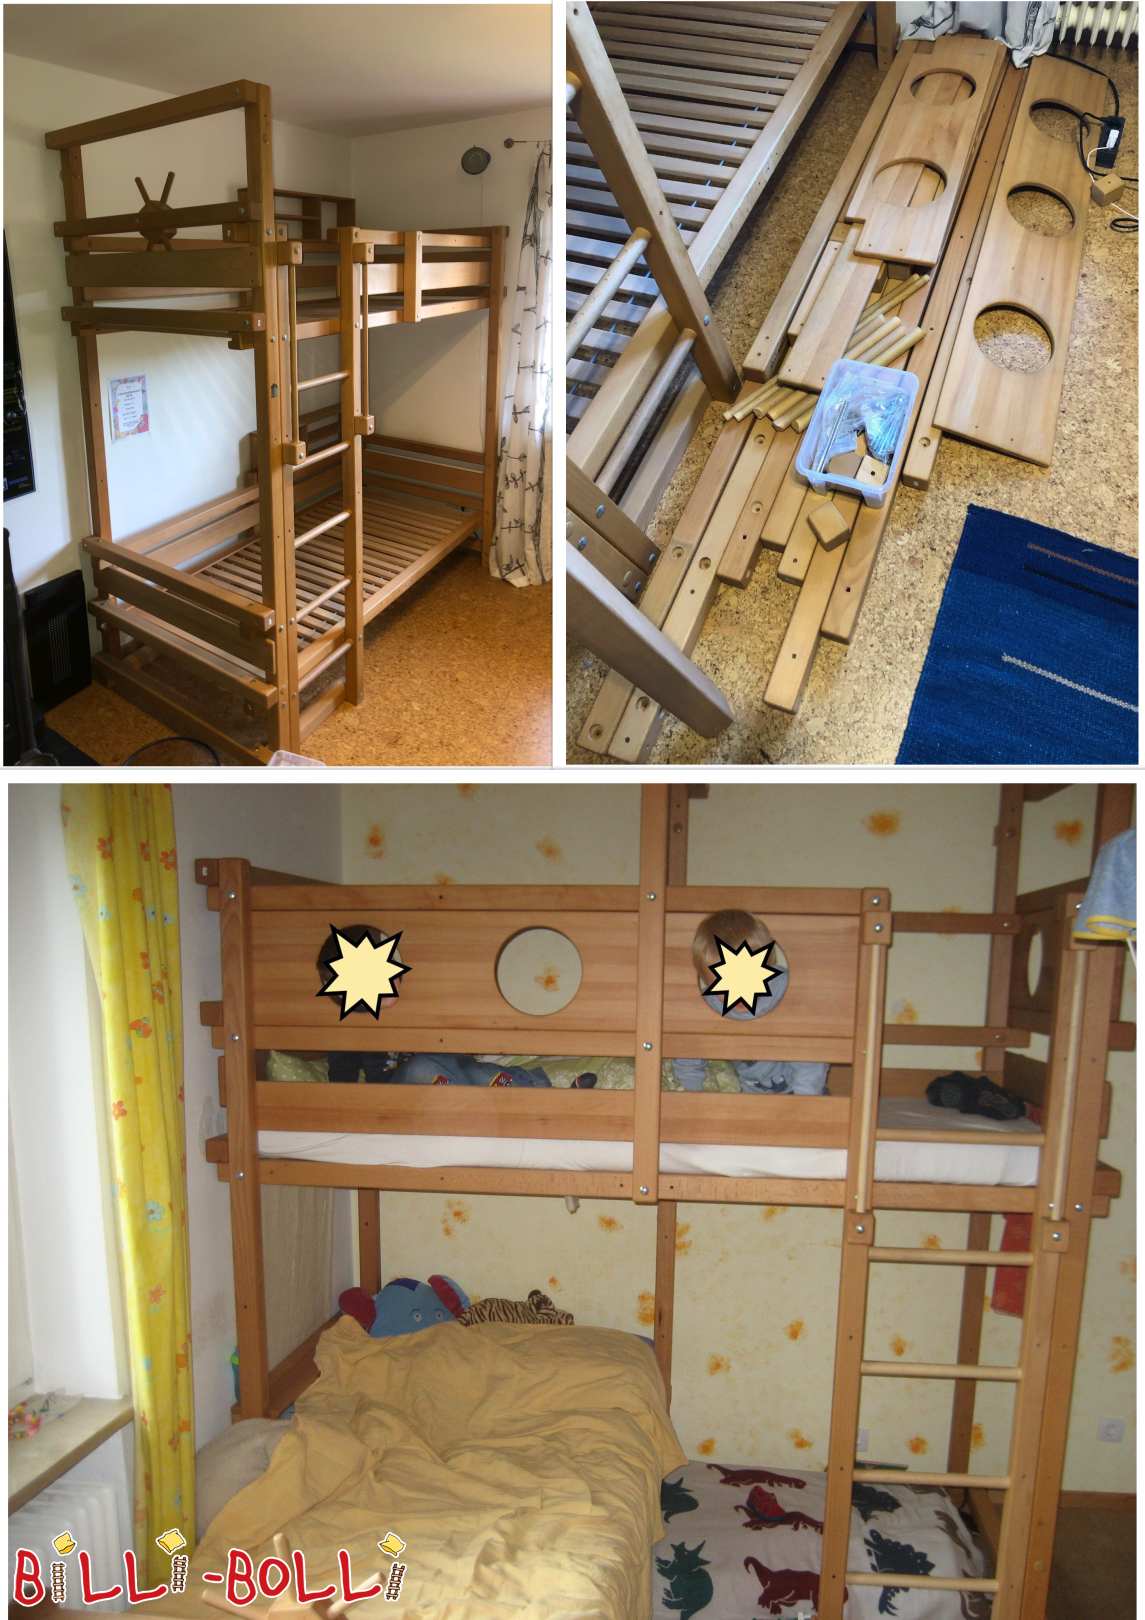 سرير بطابقين فوق الزاوية أو سريرين علويين للشباب - زان مزيت، 90x200 سم (الفئة: سرير بطابقين فوق الزاوية المستخدمة)